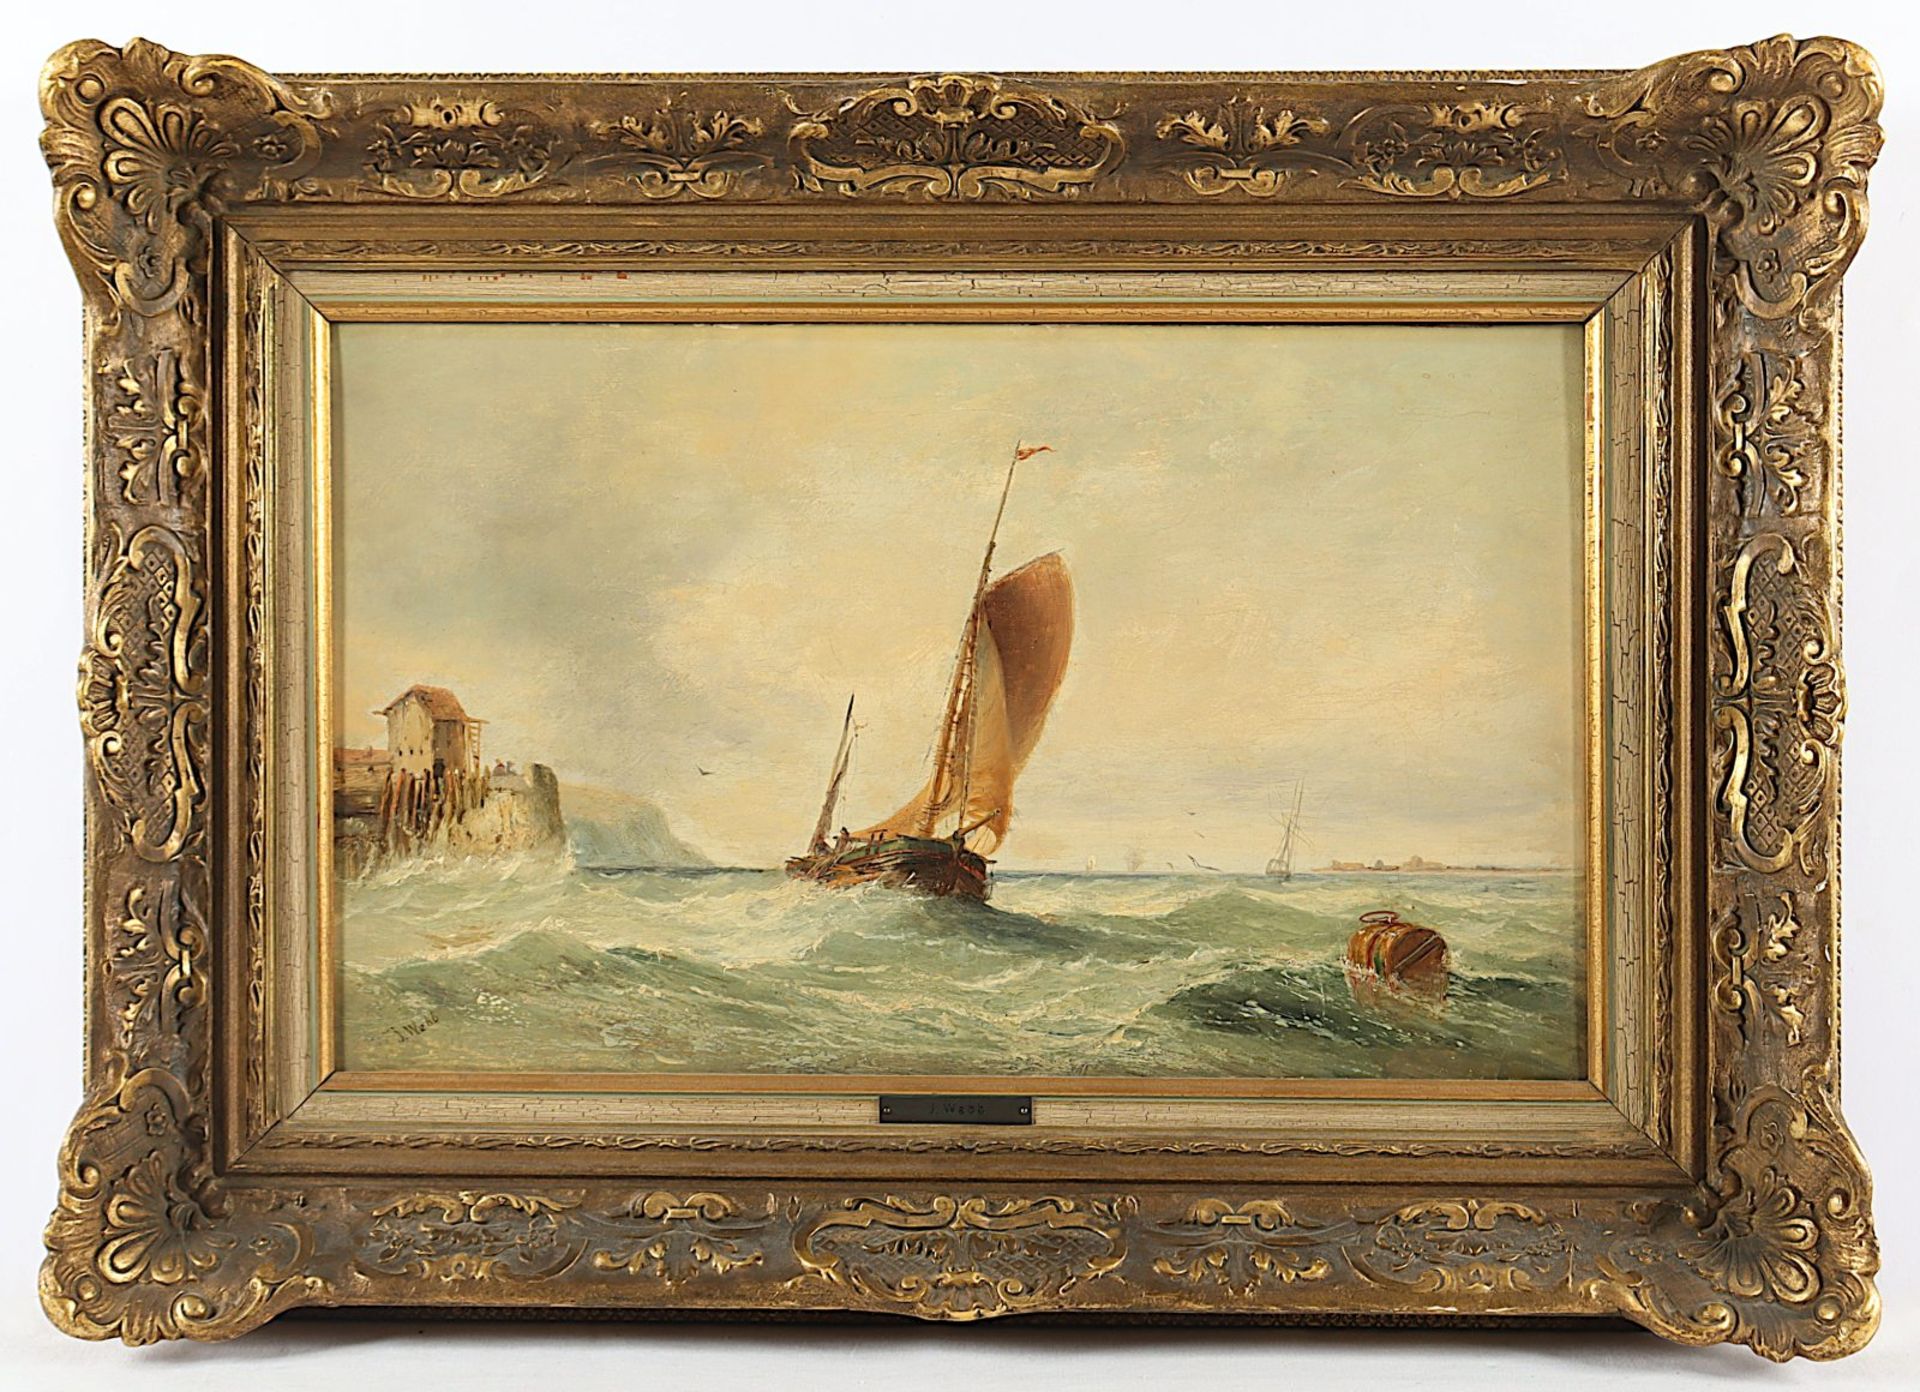 WEBB, James (1825-1895), "Schiff vor stürmischer Küste", R.